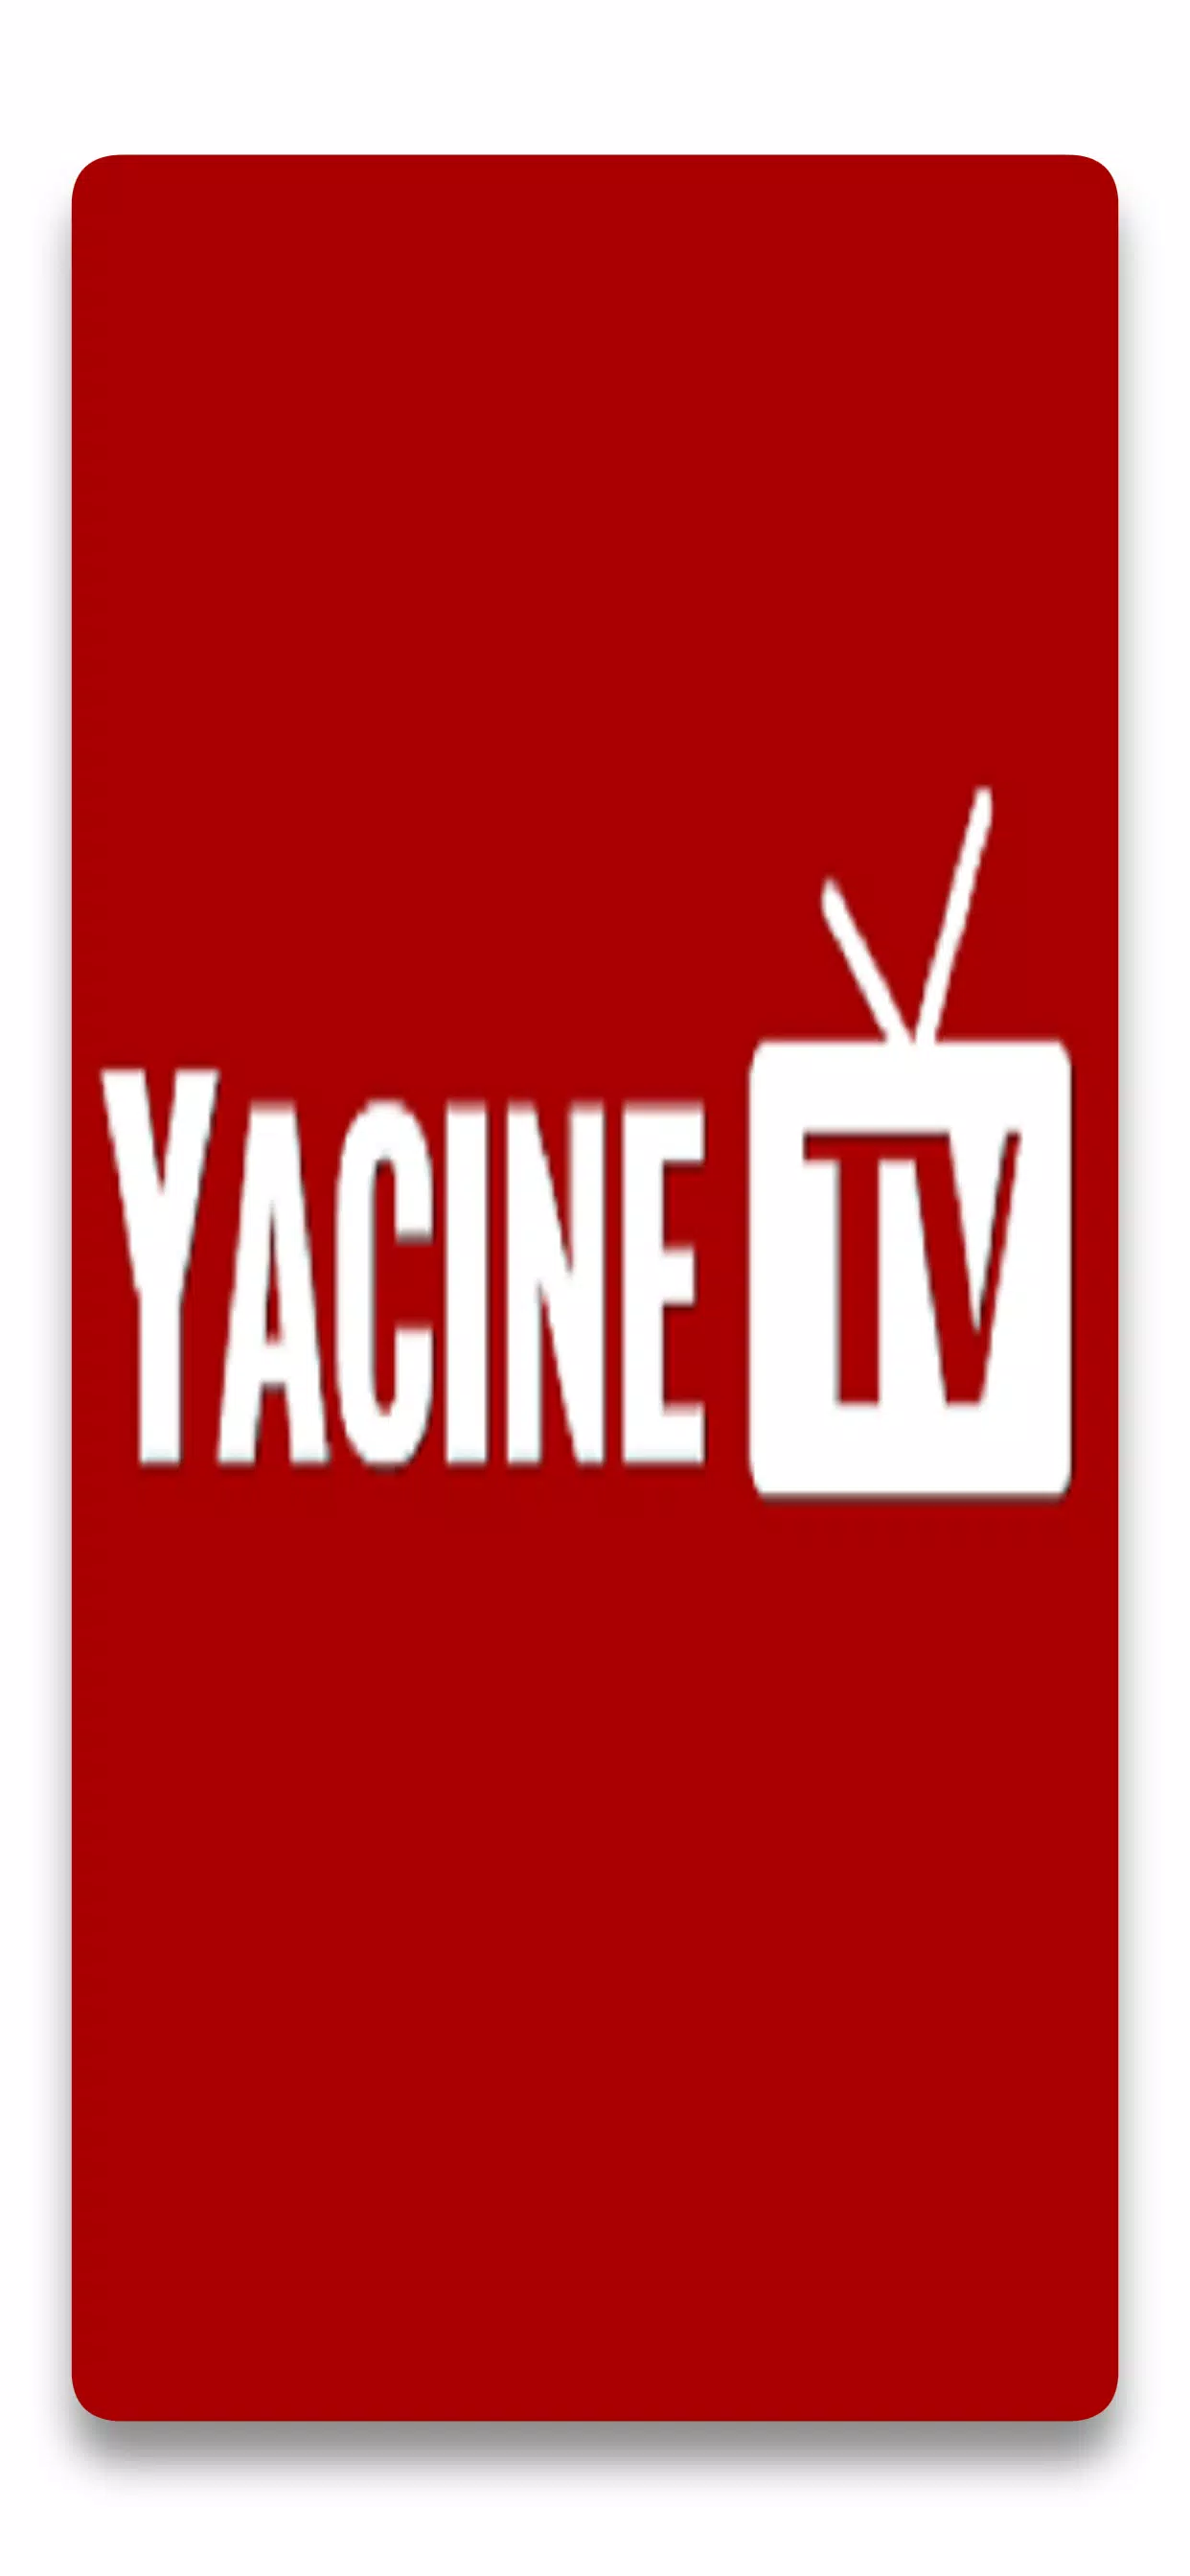 YACINE TV APK pour Android Télécharger